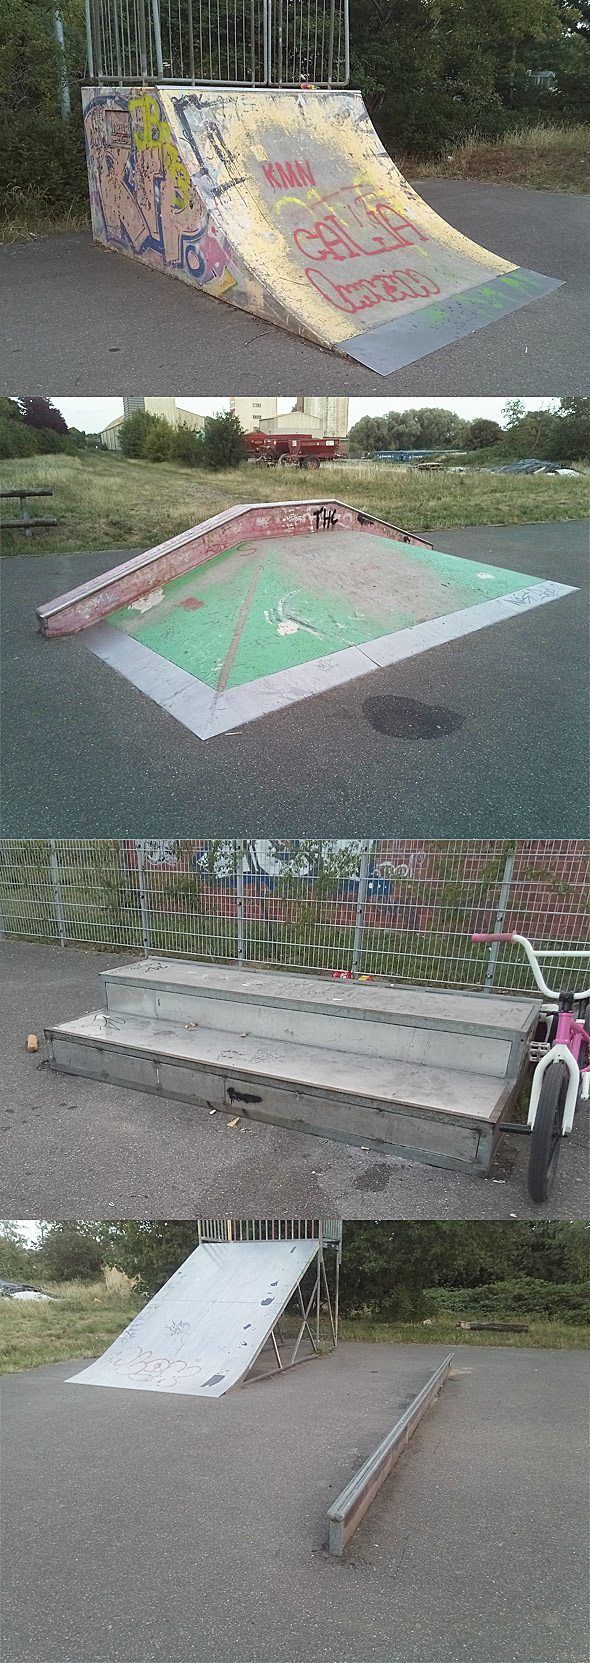 Skateboardplatz - Skatepark Kellinghusen (25548)